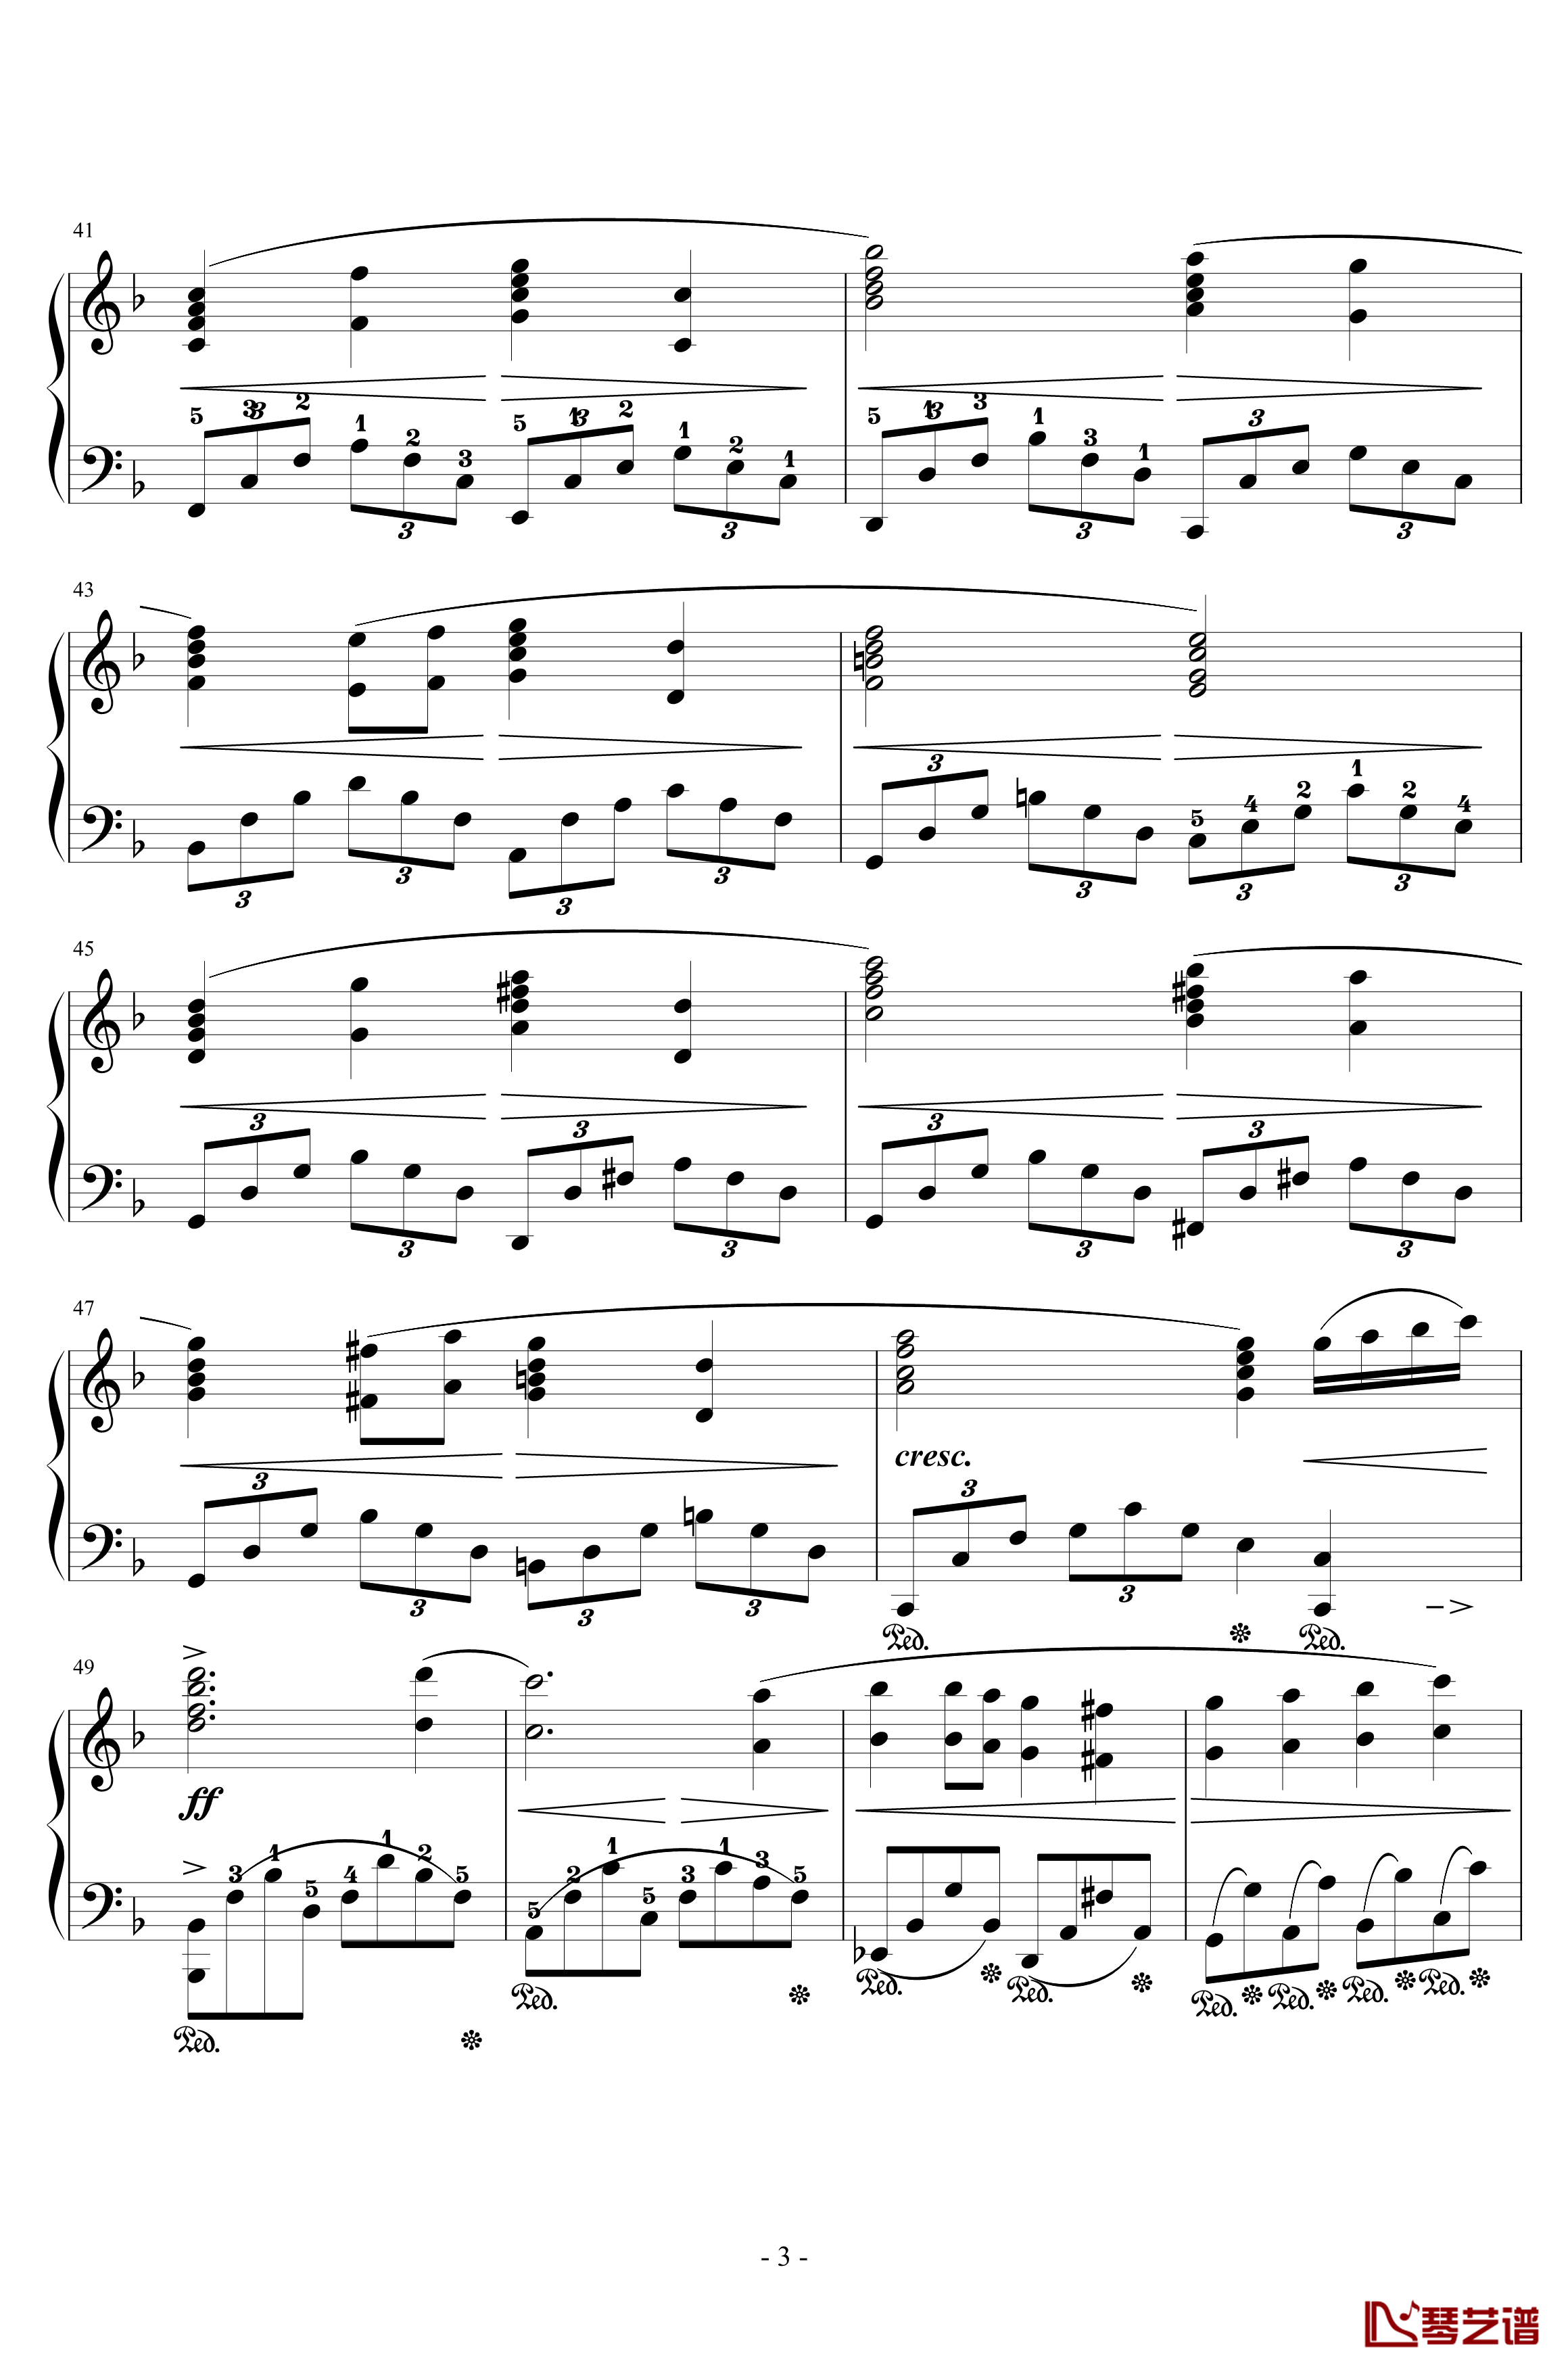 FINAL FANTASY钢琴谱-ENCORE-植松伸夫